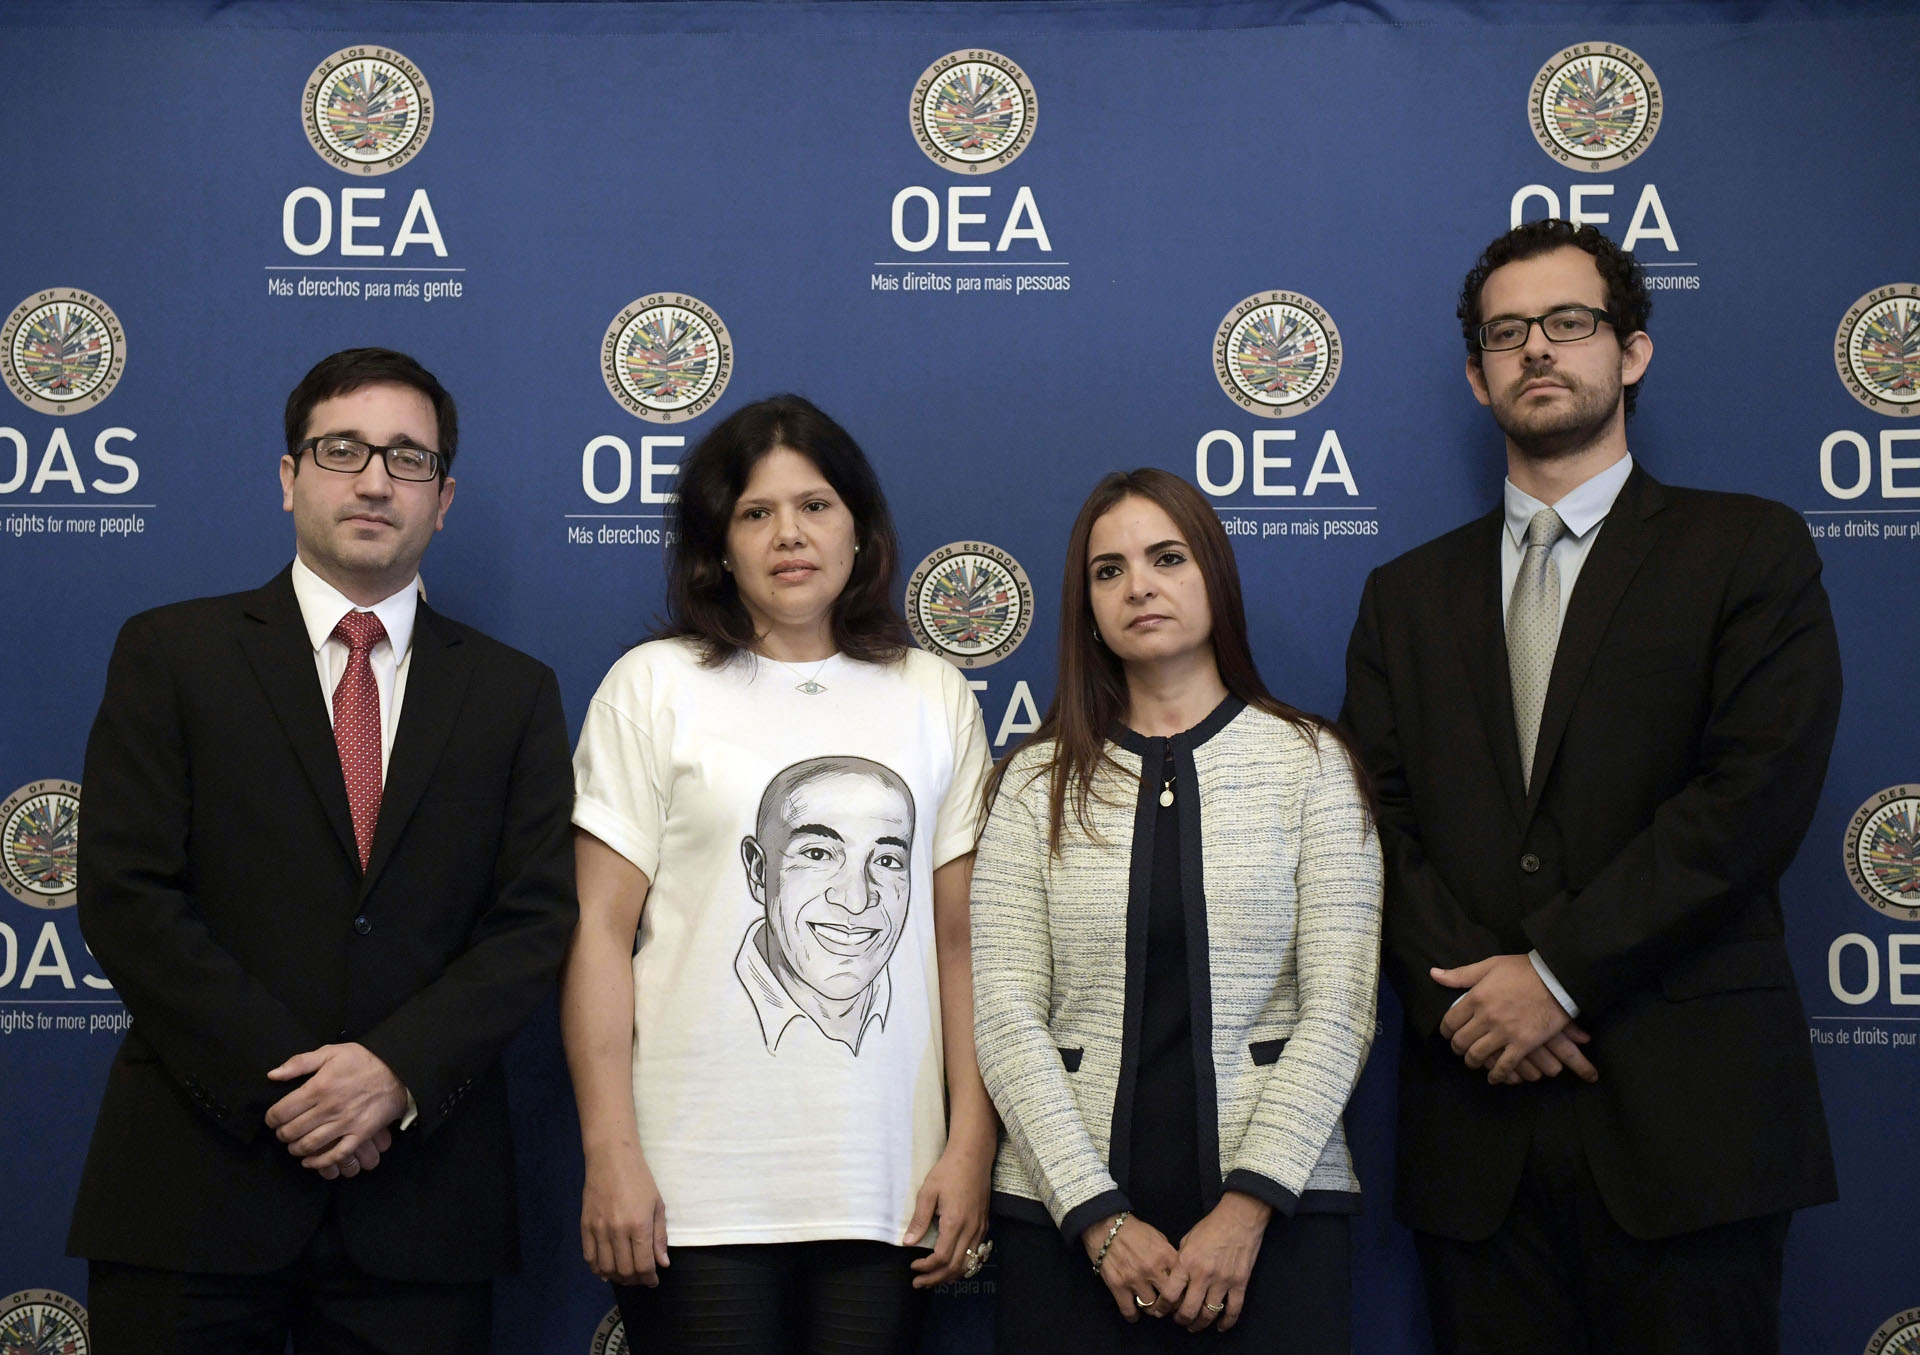 En video: Las graves denuncias de las víctimas del régimen de Maduro en la OEA